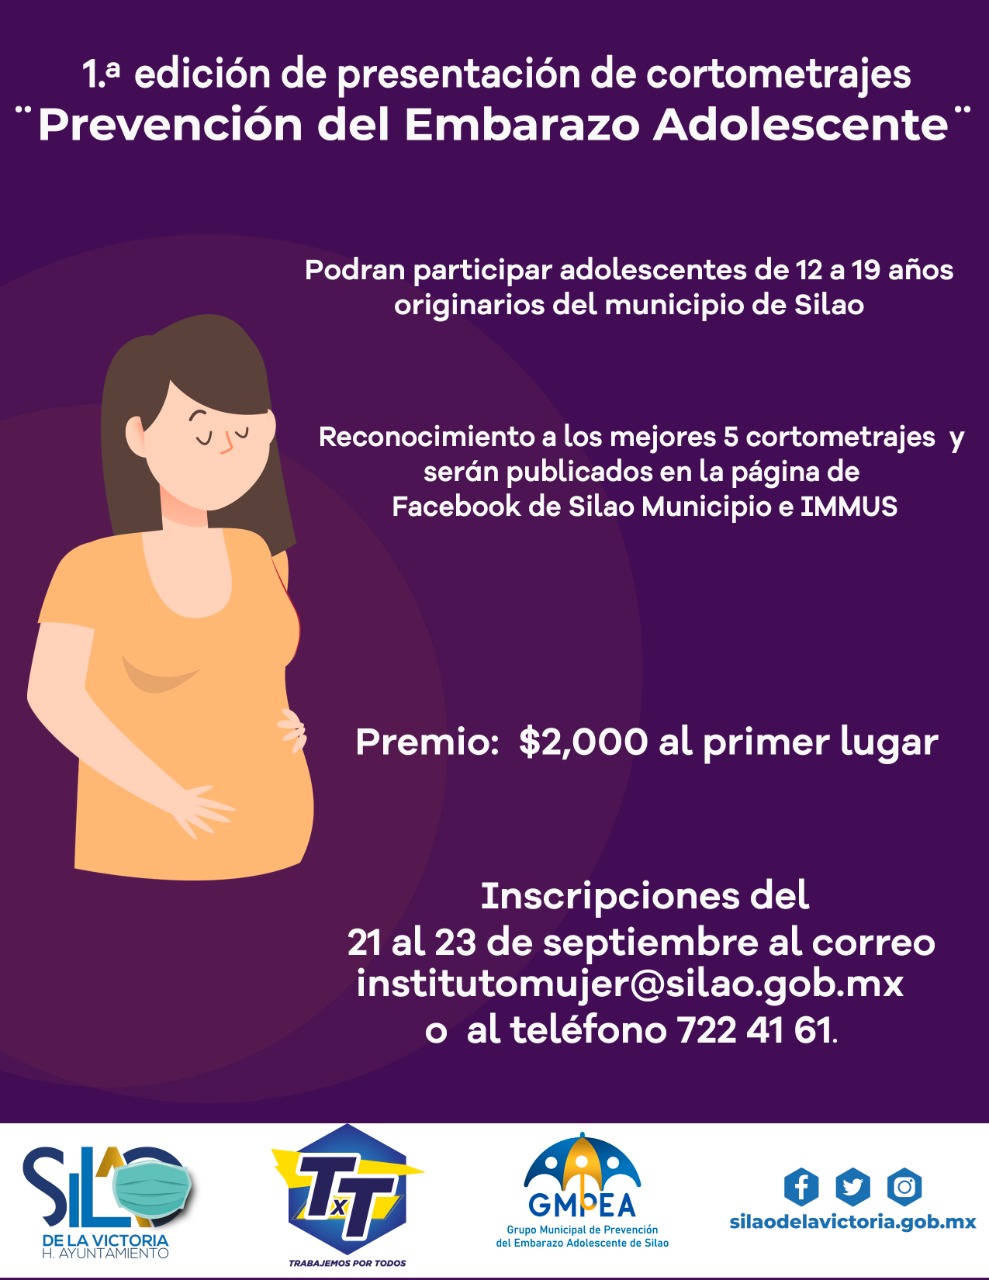 Invitan a participar en concurso de cortometrajes con motivo del “Día Nacional para la Prevención del Embarazo Adolescente”